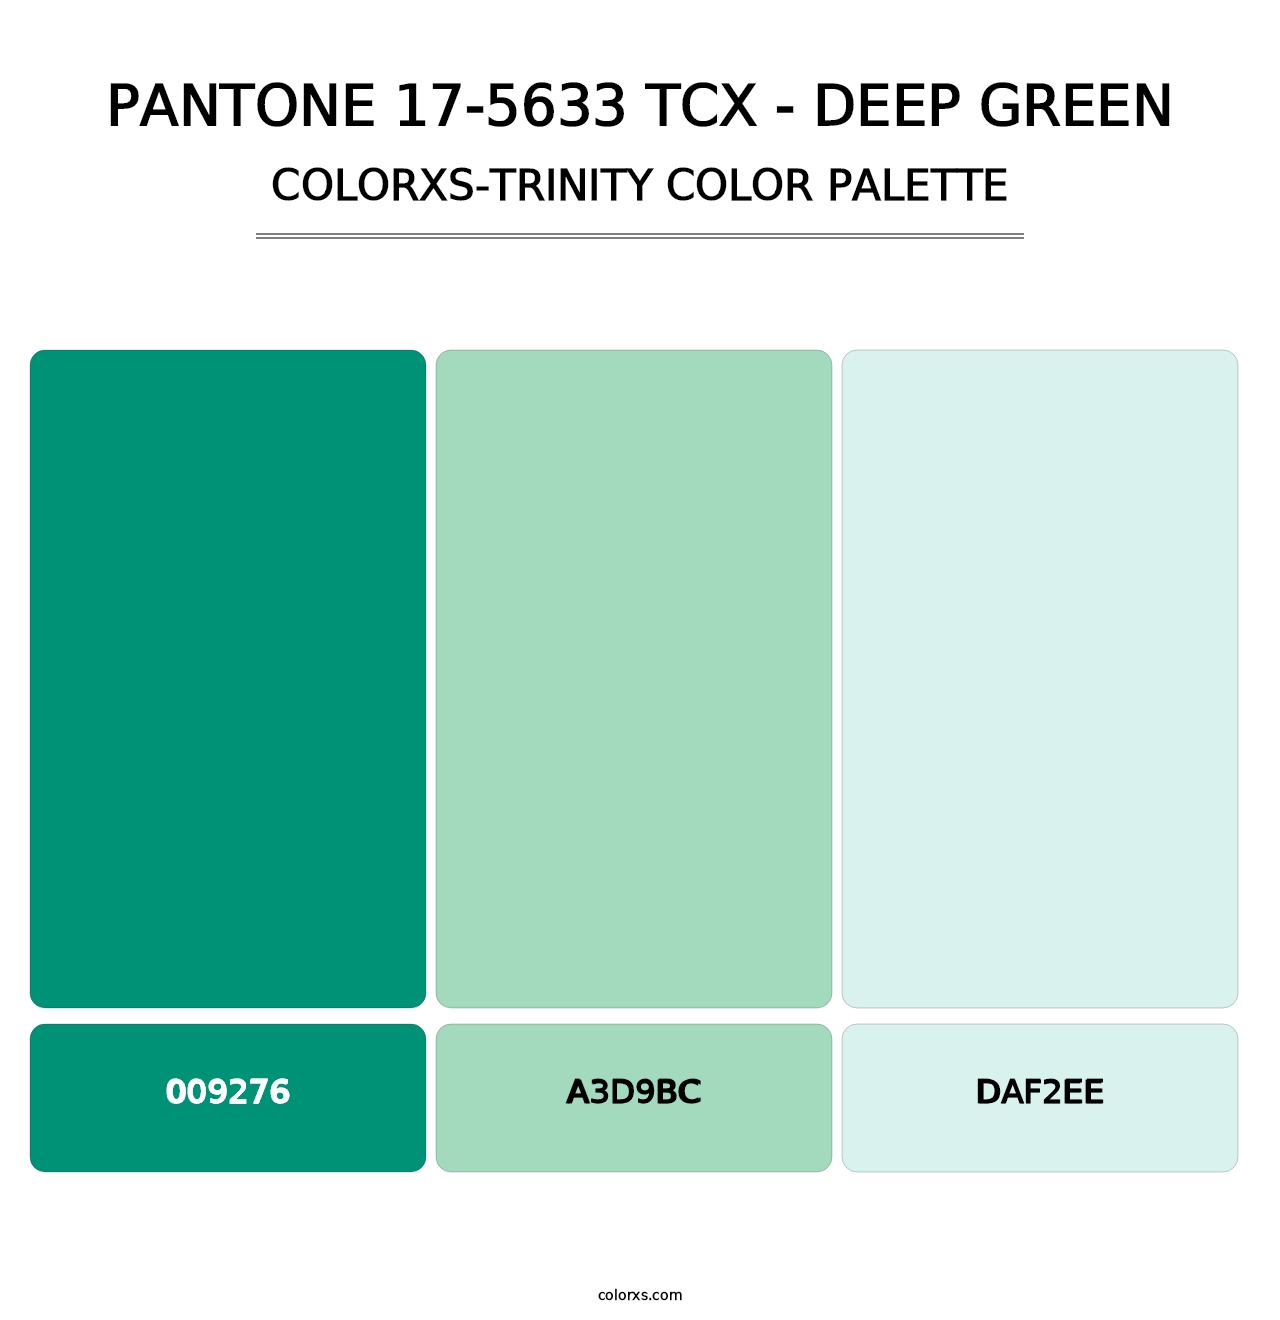 PANTONE 17-5633 TCX - Deep Green - Colorxs Trinity Palette